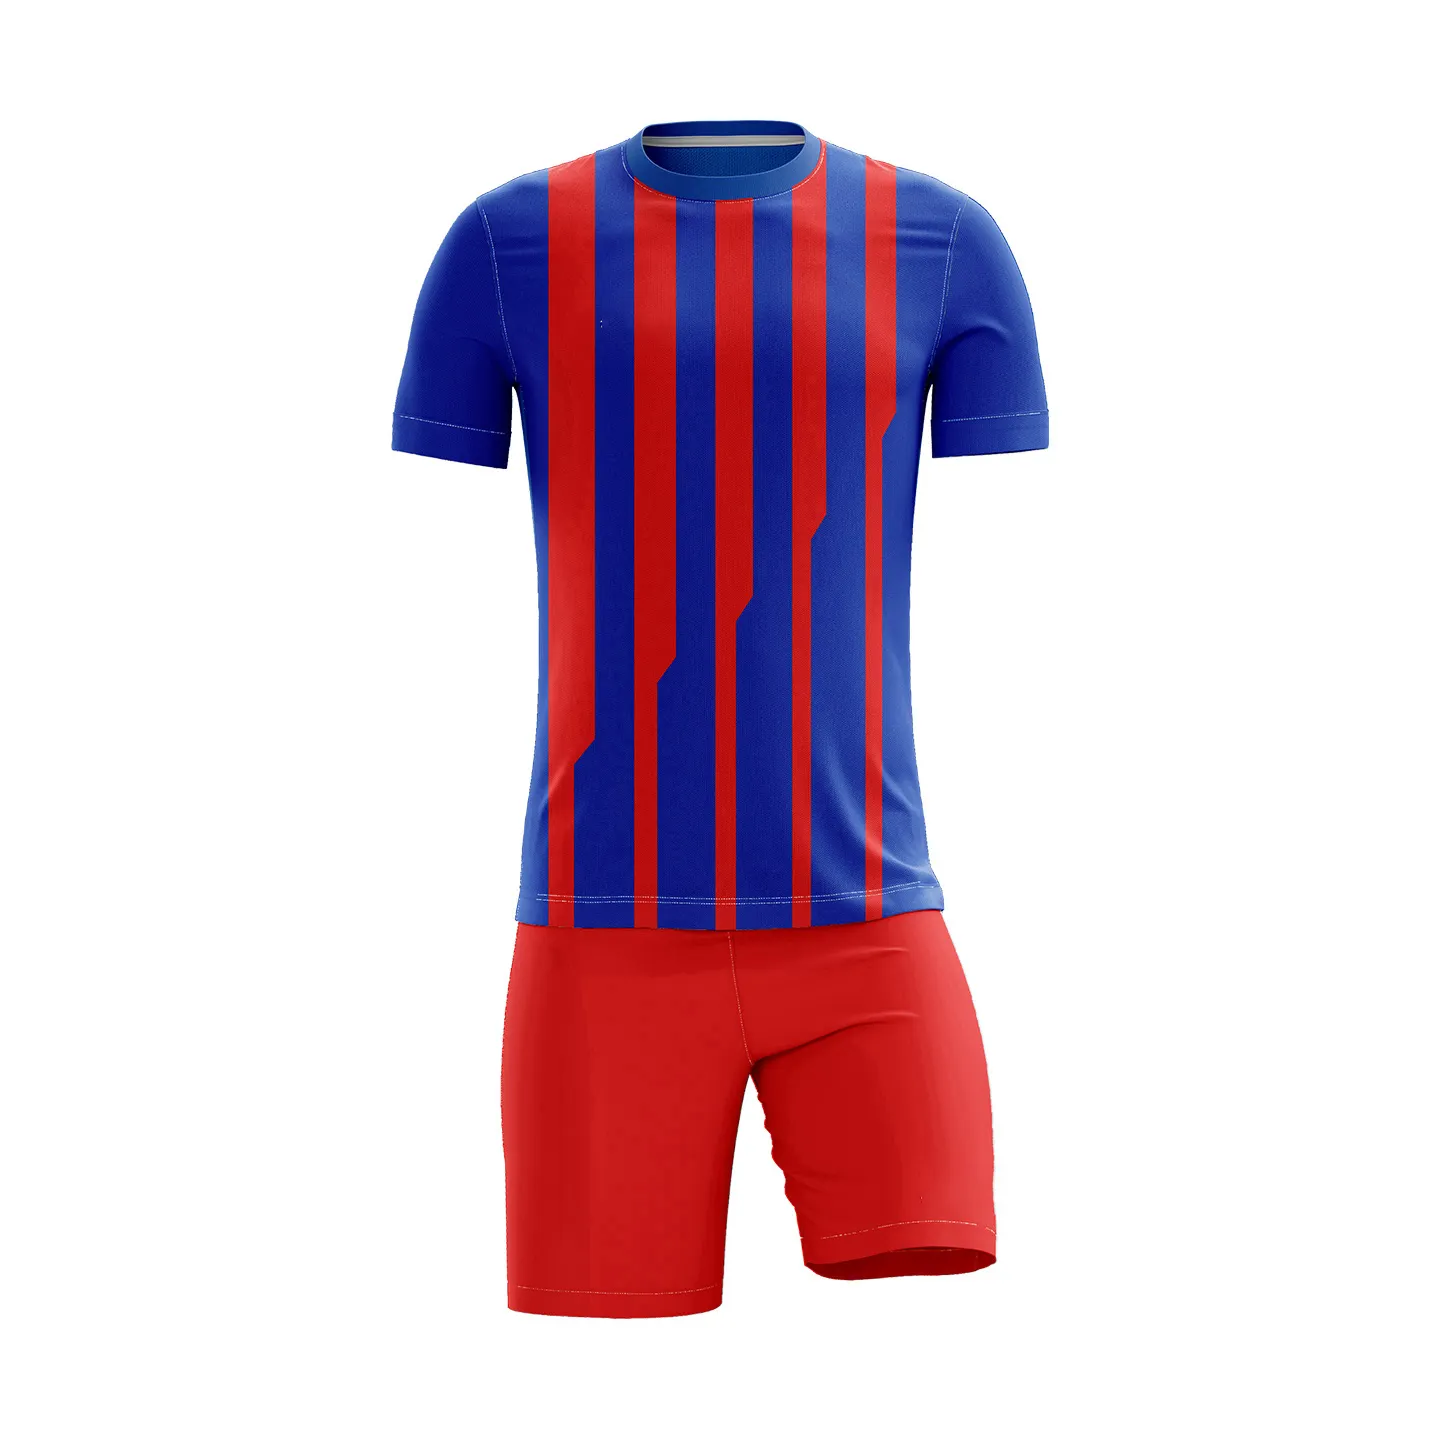 Yumuşak kumaş 100% en kaliteli ucuz düşük fiyat özel Logo hizmeti ile futbol formaları üniforma